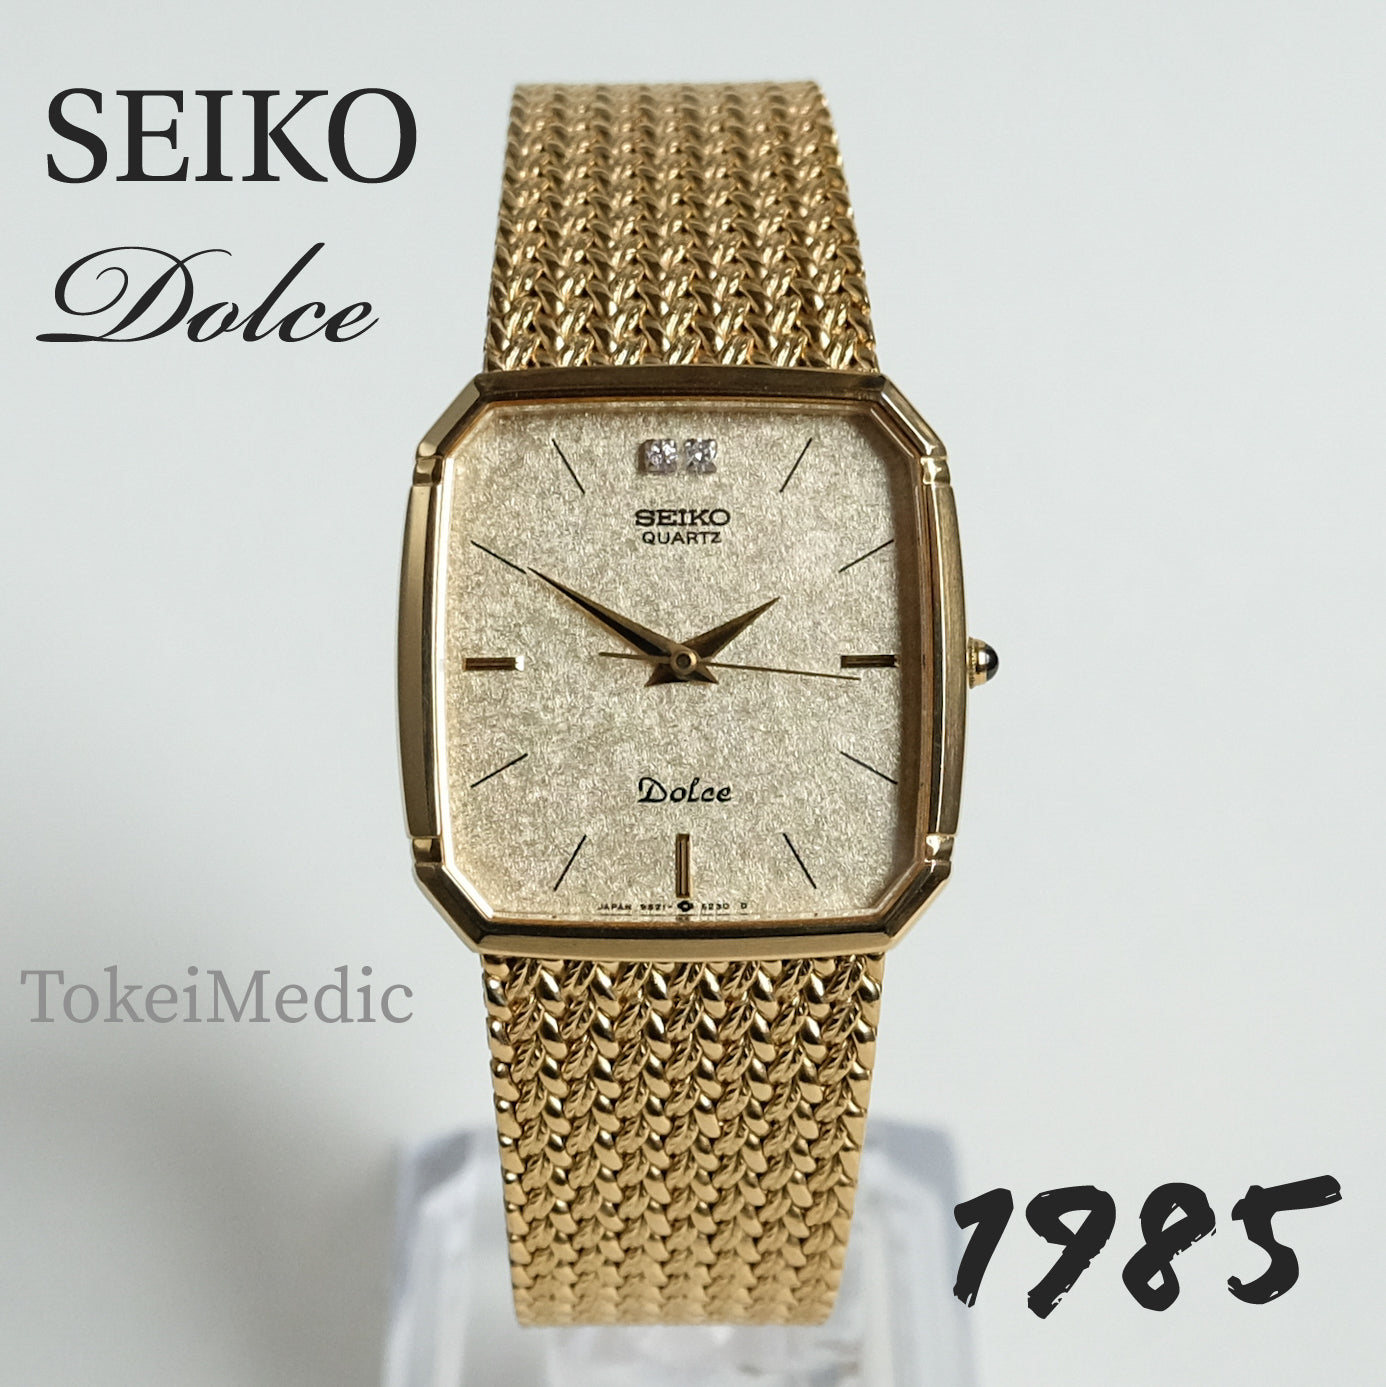 1985 Seiko Dolce 9521-5210